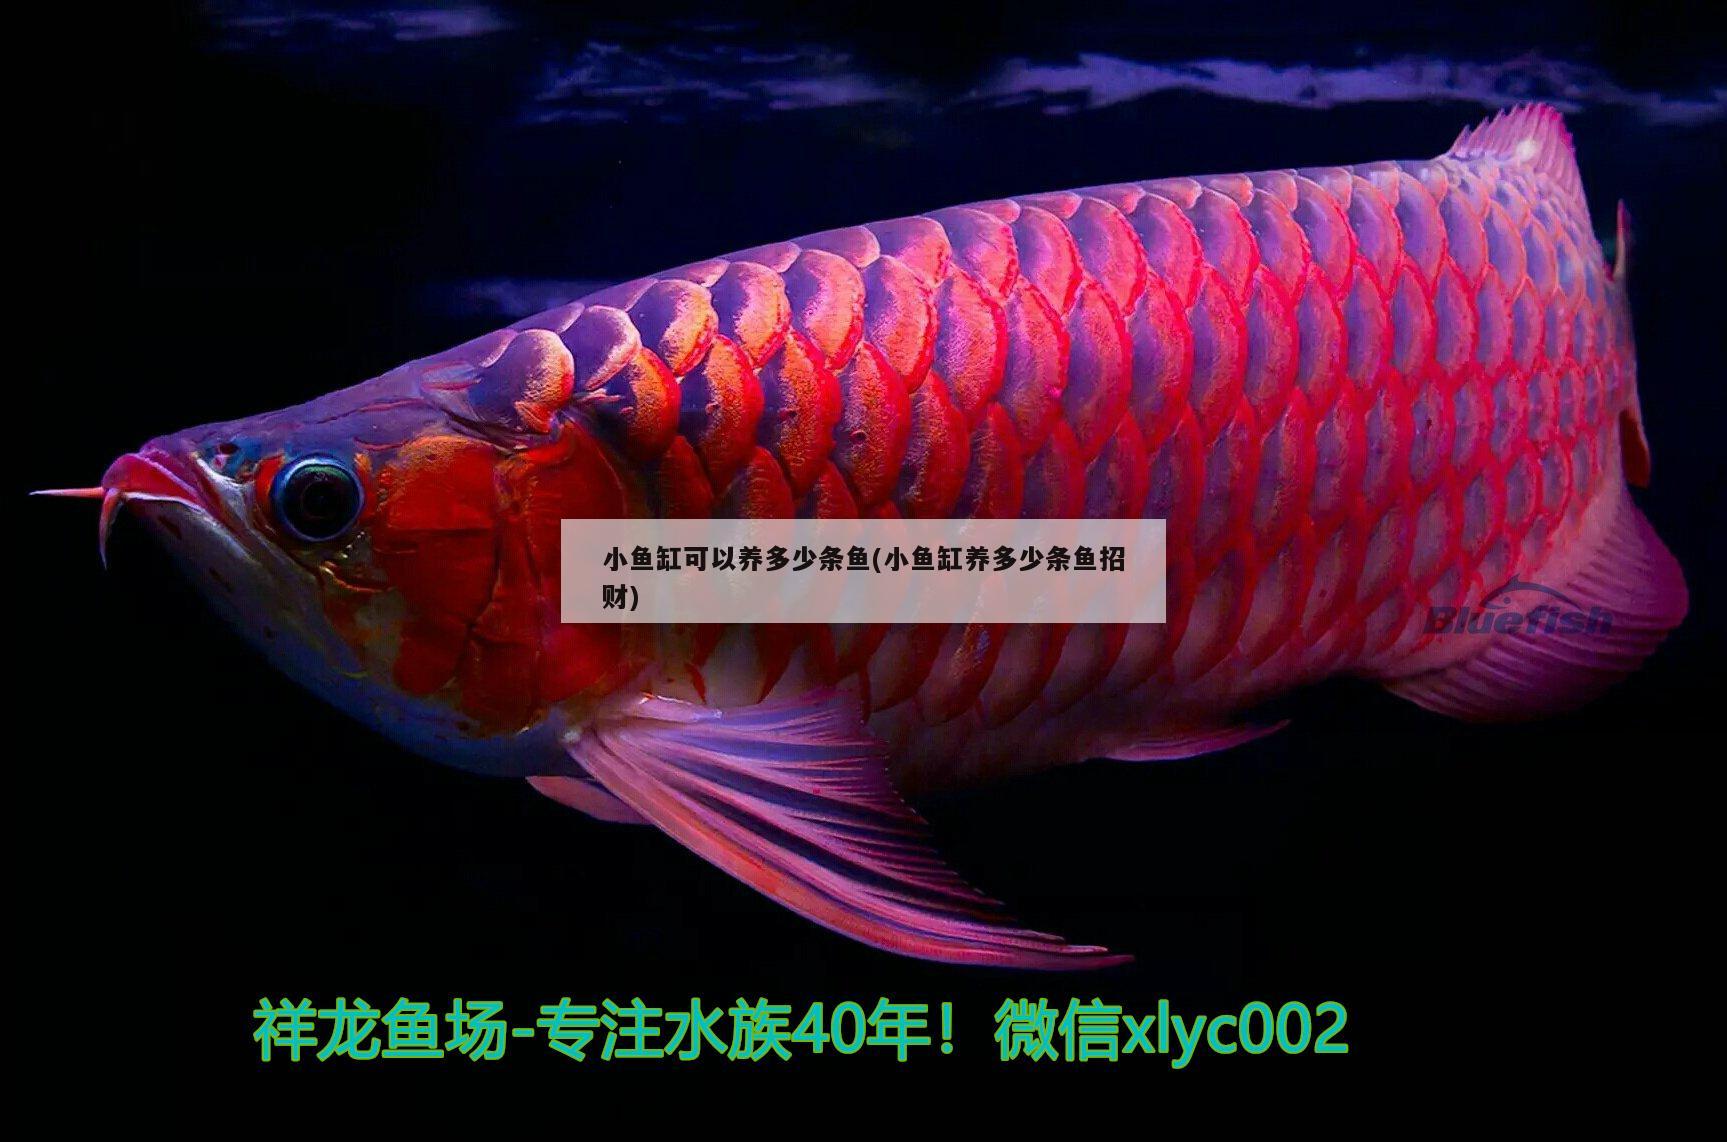 广州董珠贸易店 全国水族馆企业名录 第3张